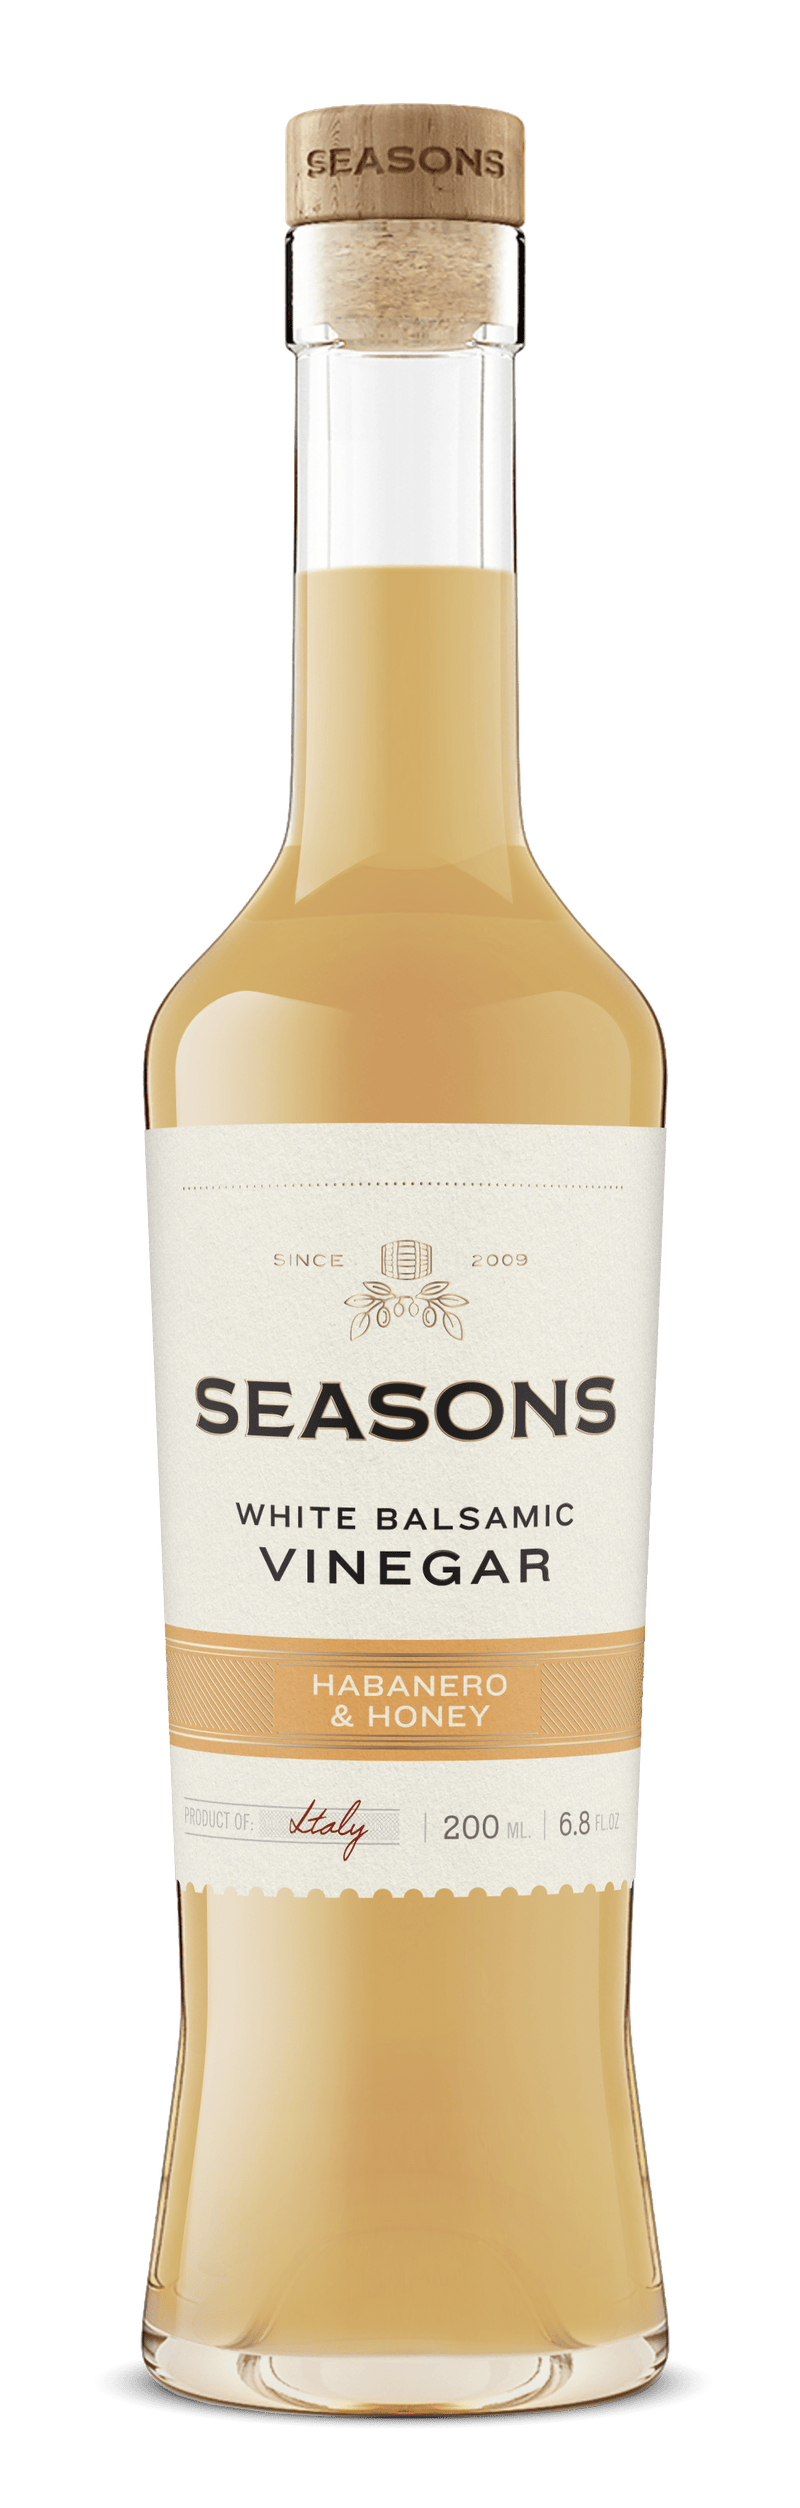 Seasons White Balsamic 200mL Habanero & Honey